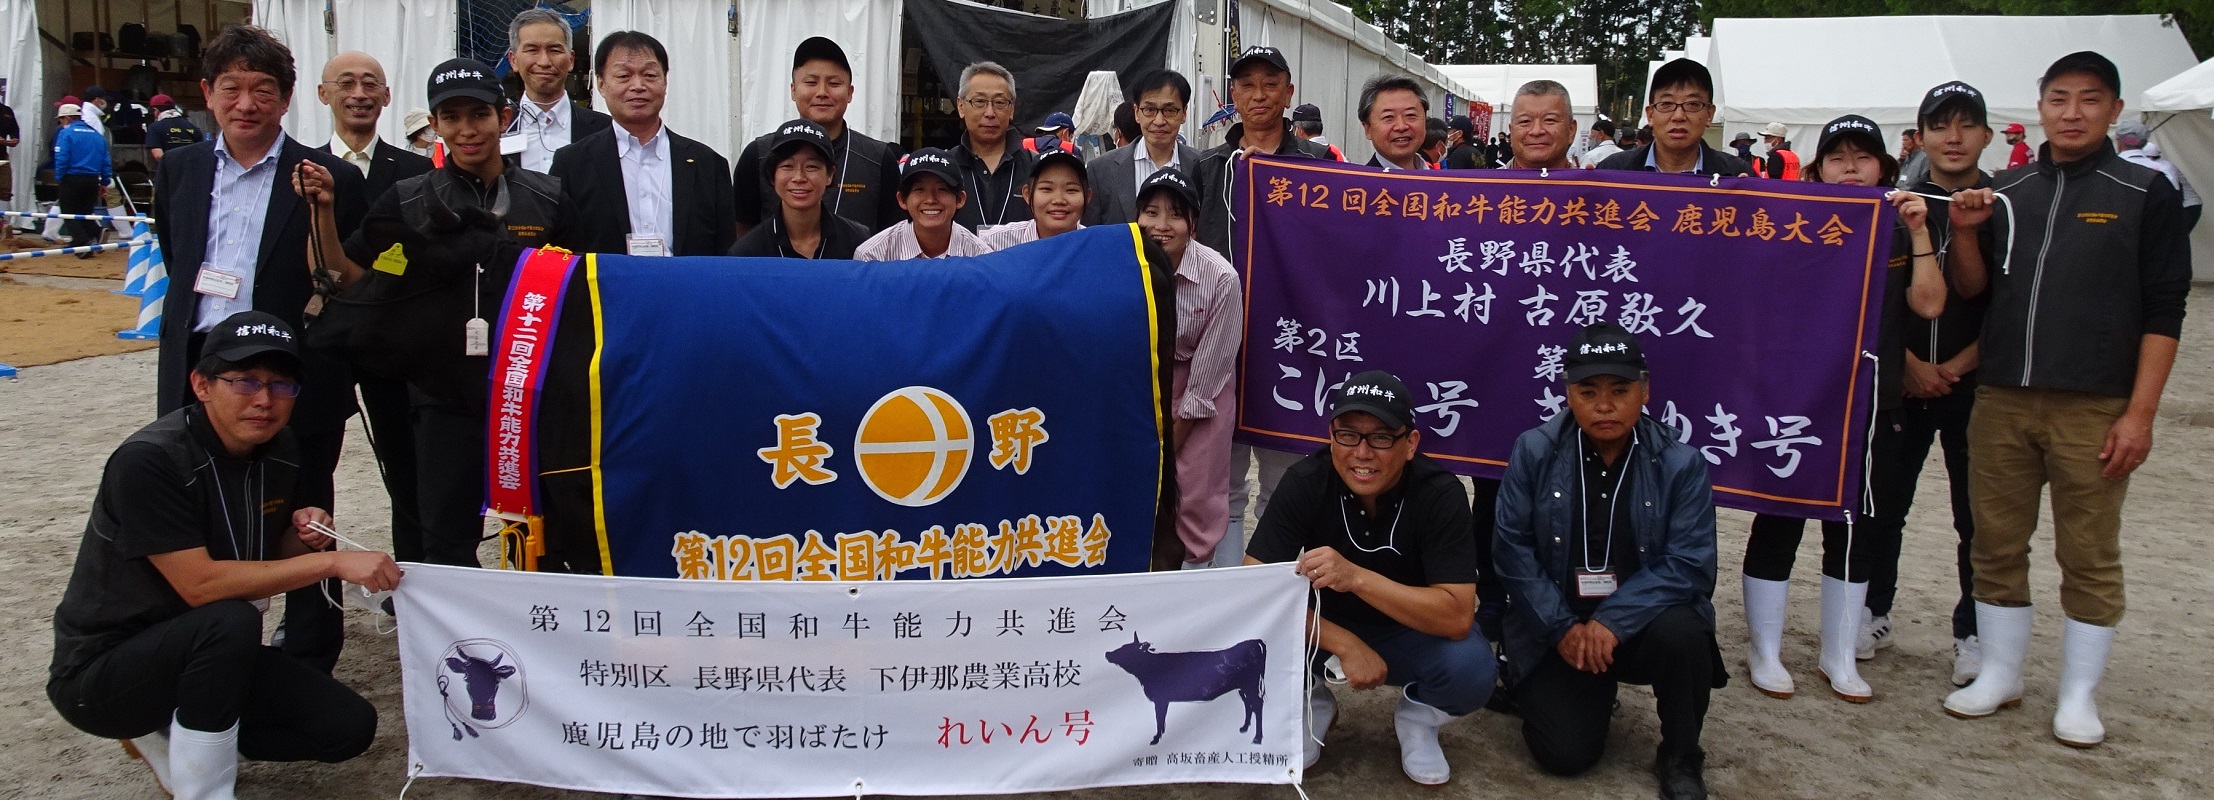 鹿児島県で開かれた第12回全国和牛能力共進会に出場した長野県関係者